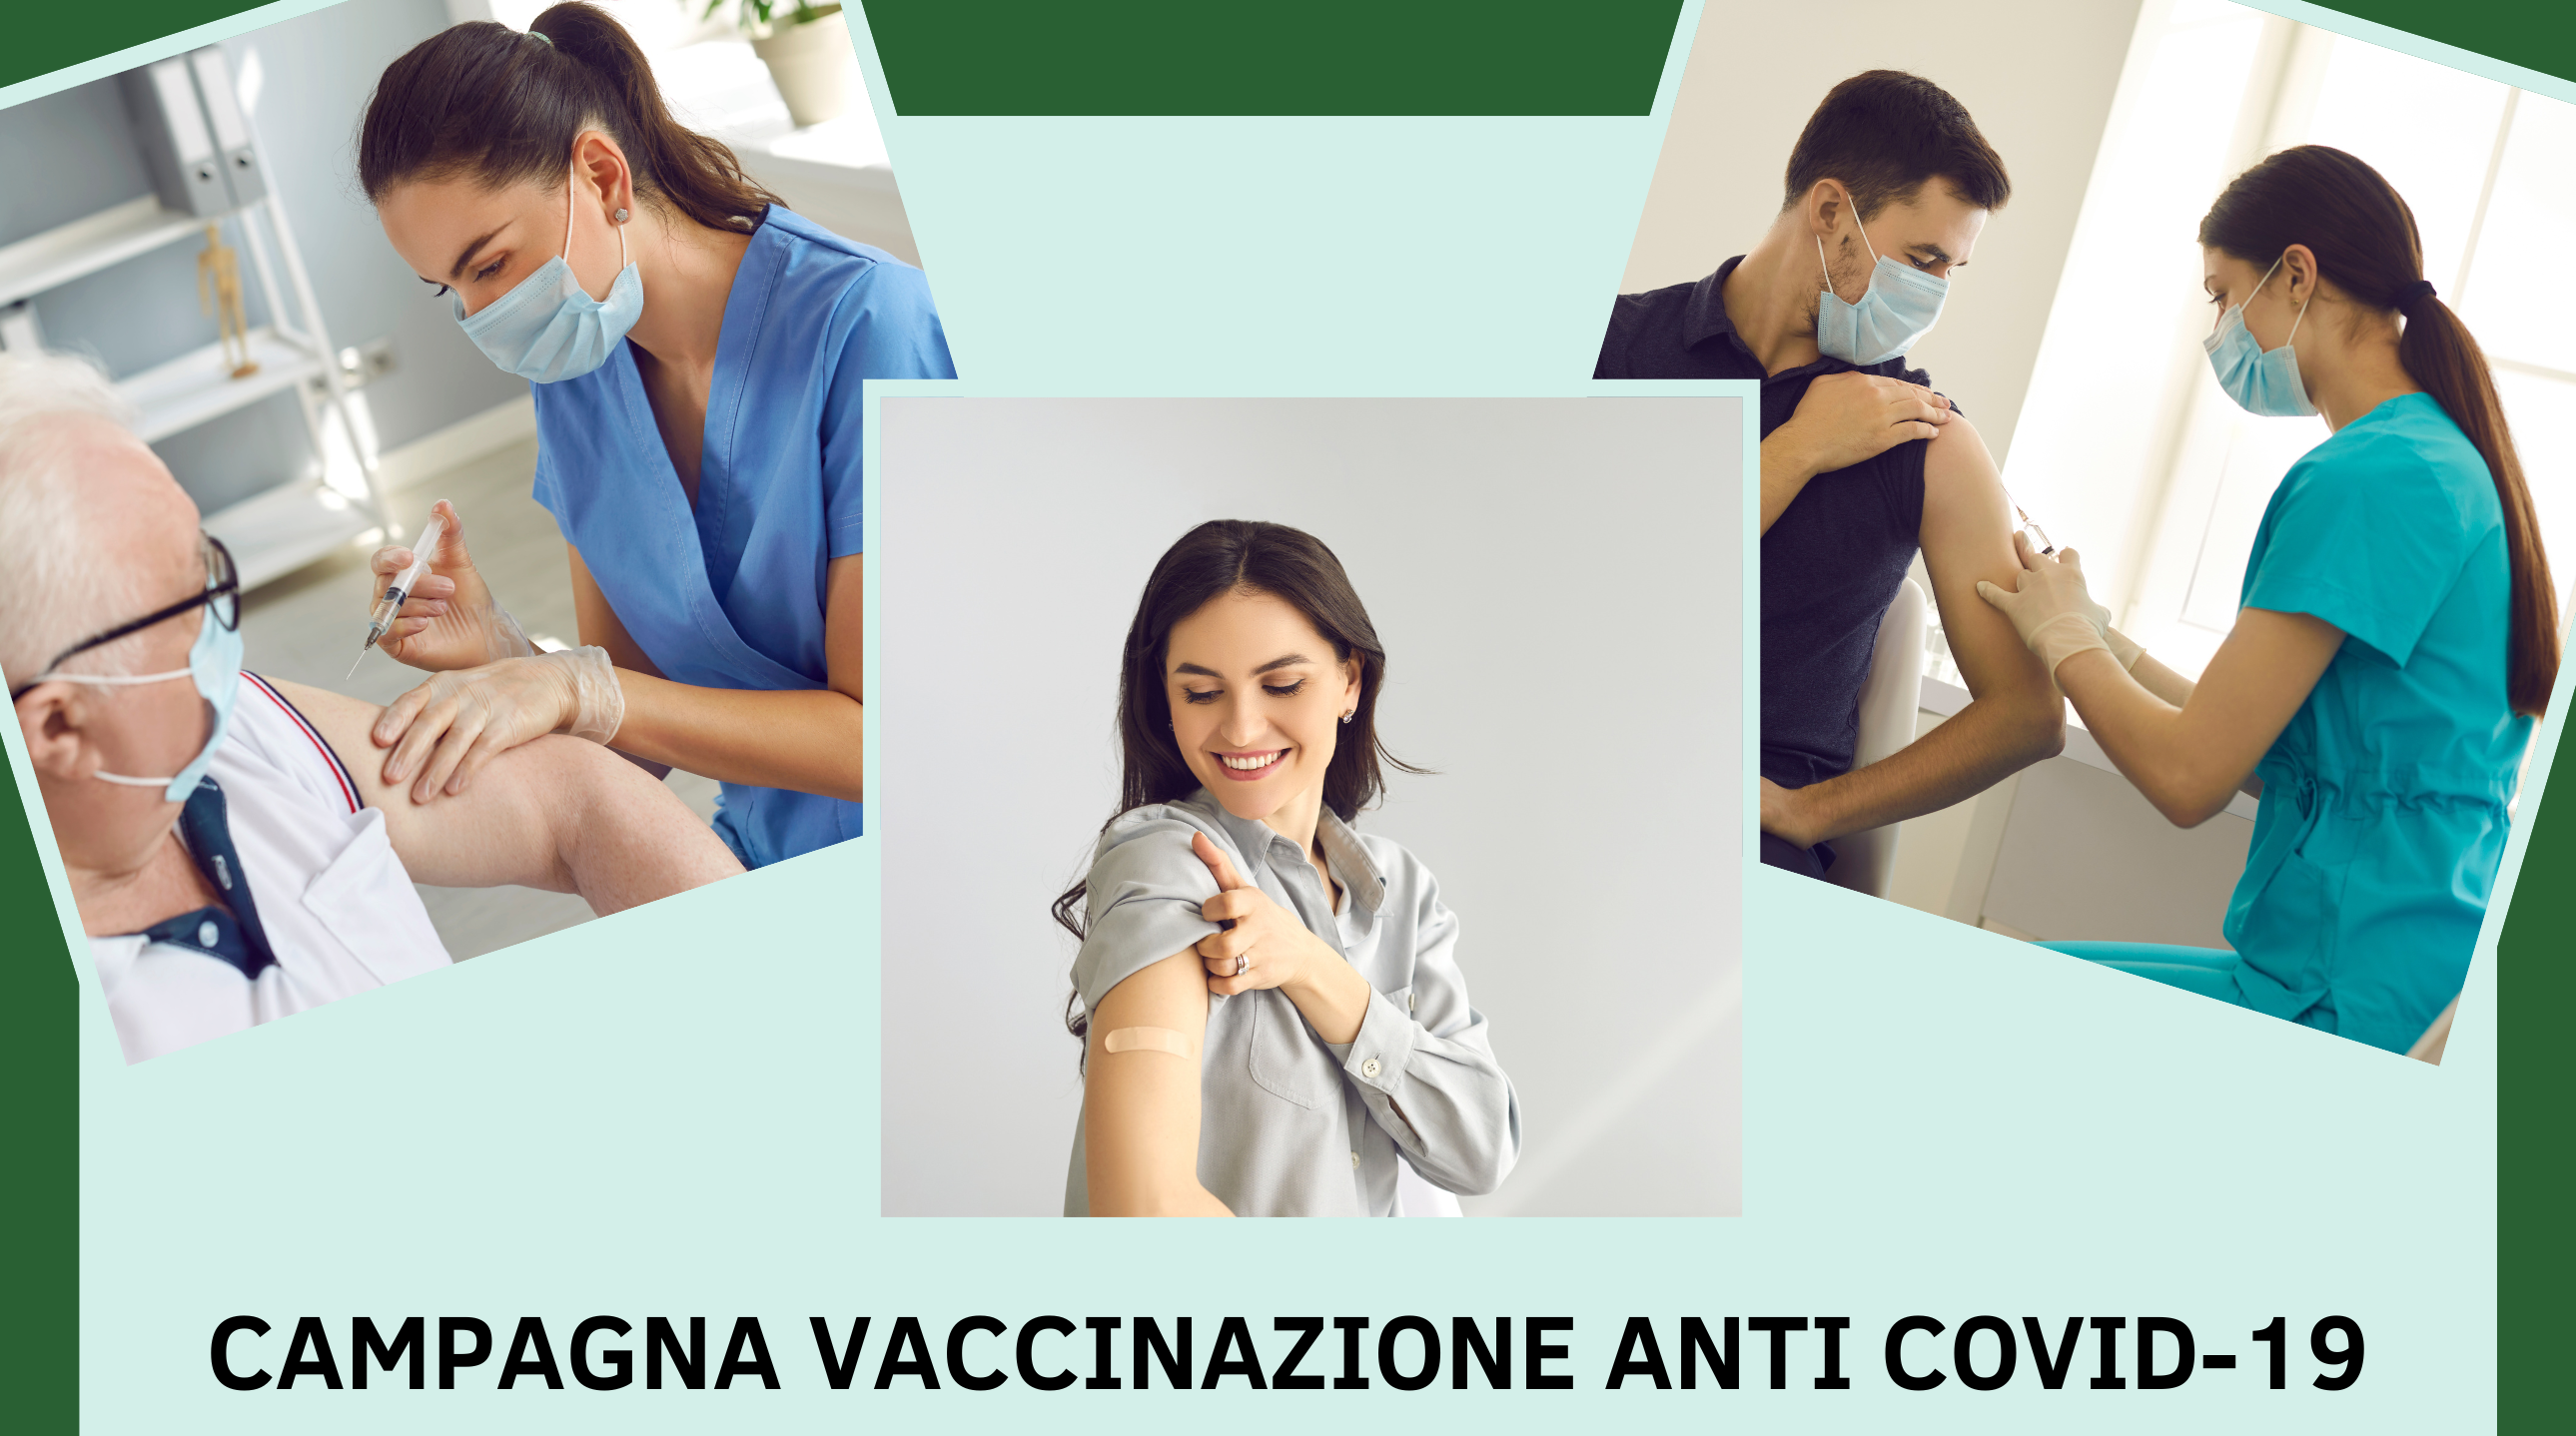 campagna vaccinazione anti covid 19